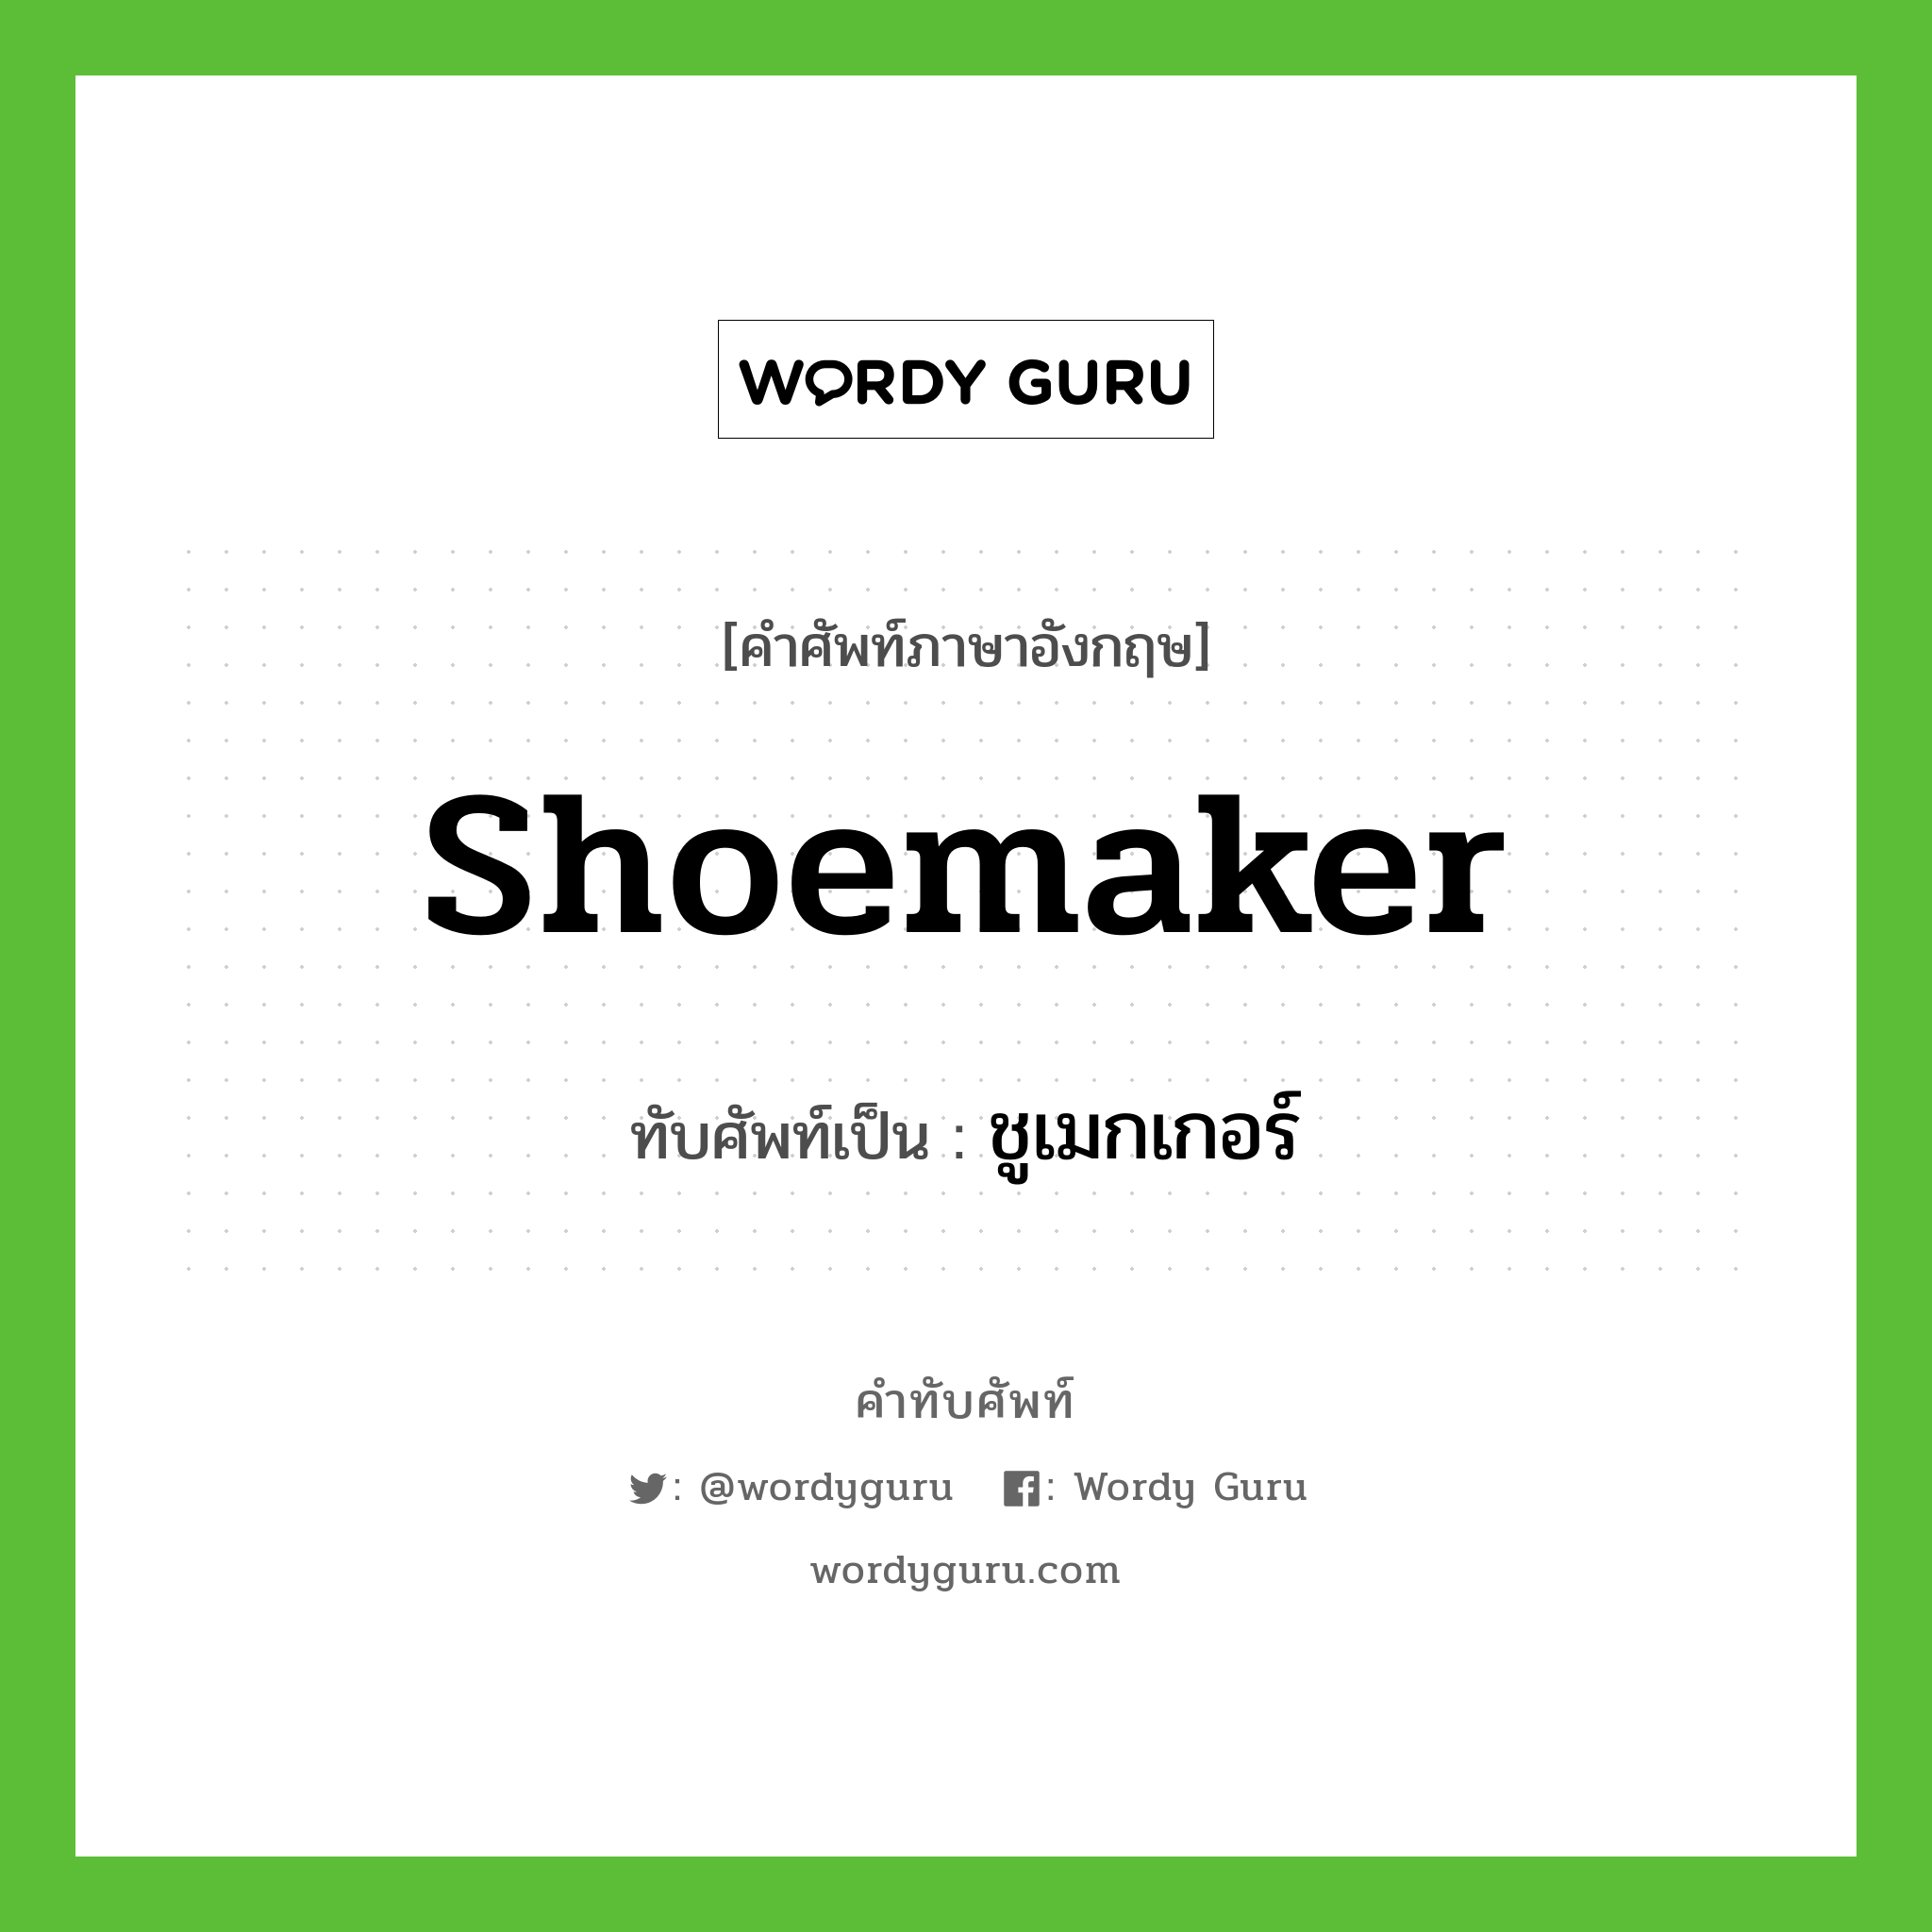 Shoemaker เขียนเป็นคำไทยว่าอะไร?, คำศัพท์ภาษาอังกฤษ Shoemaker ทับศัพท์เป็น ชูเมกเกอร์